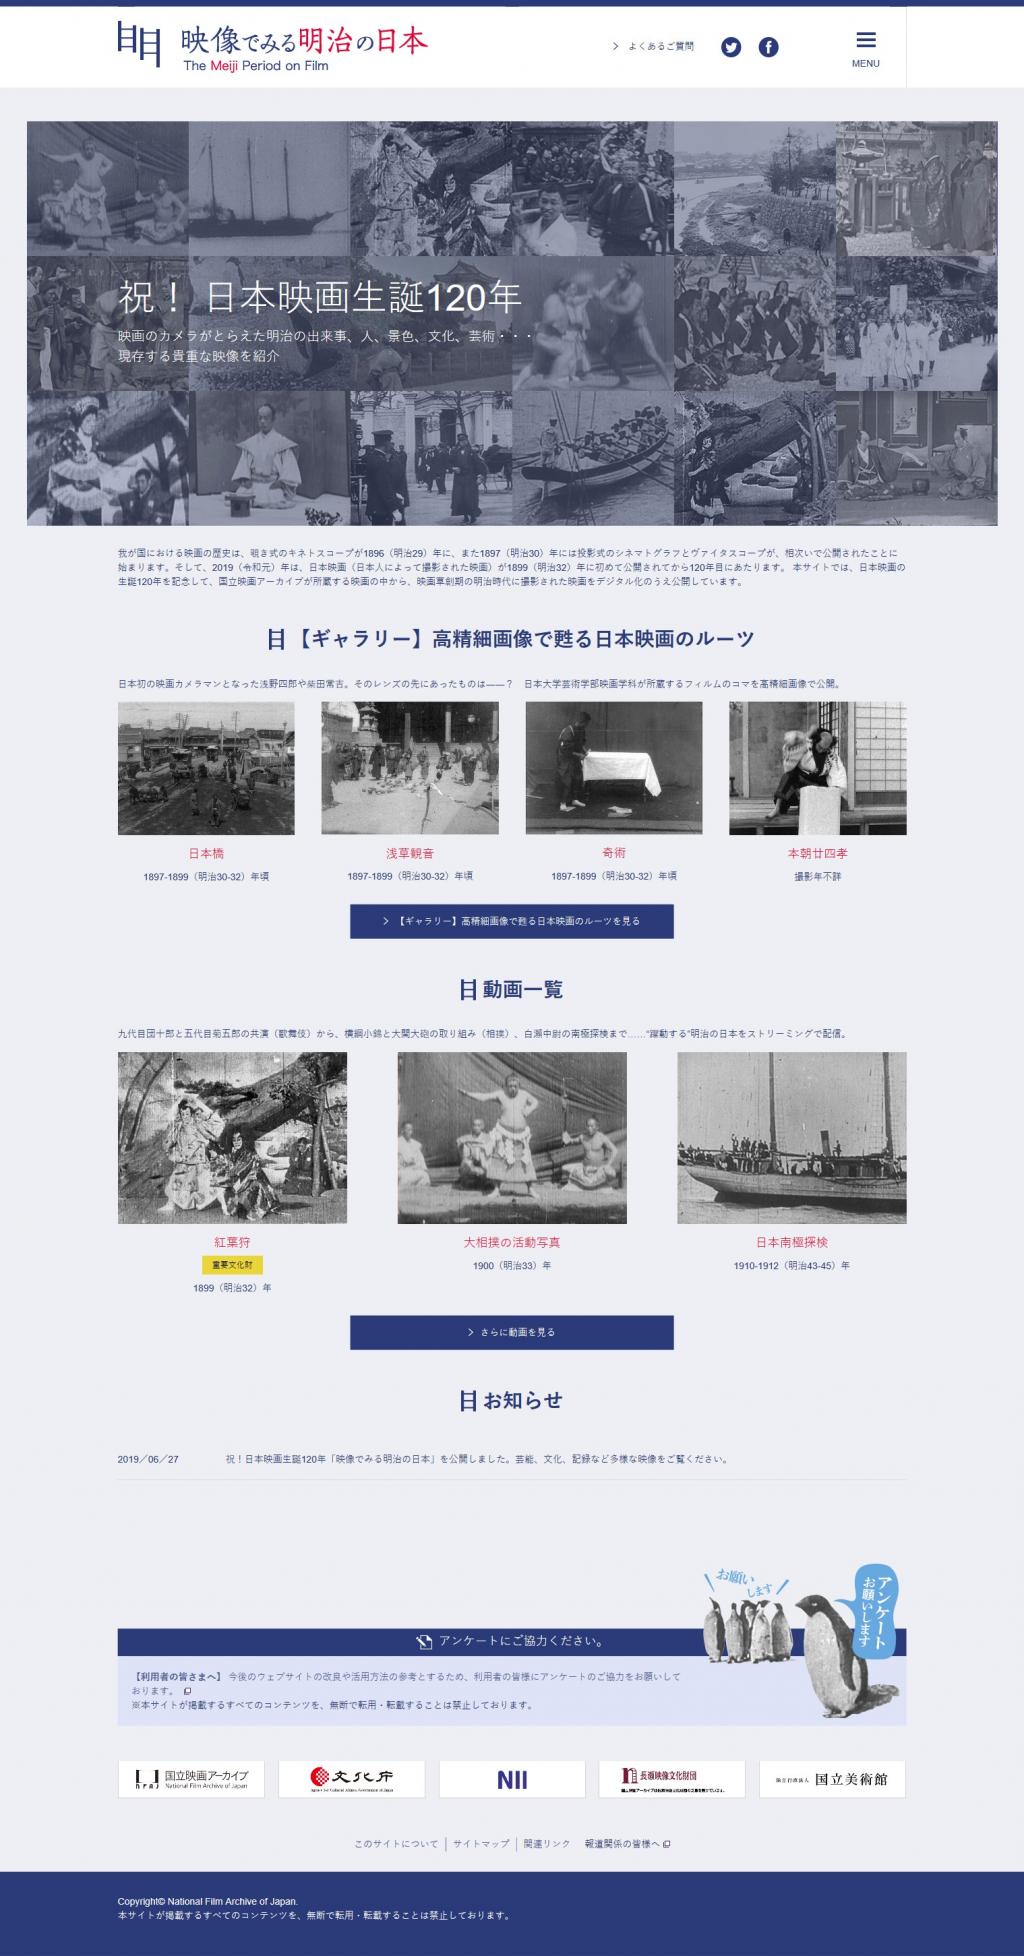  現存最古の日本映画もみられる！日本映画生誕120年記念サイト「映像でみる明治の日本」